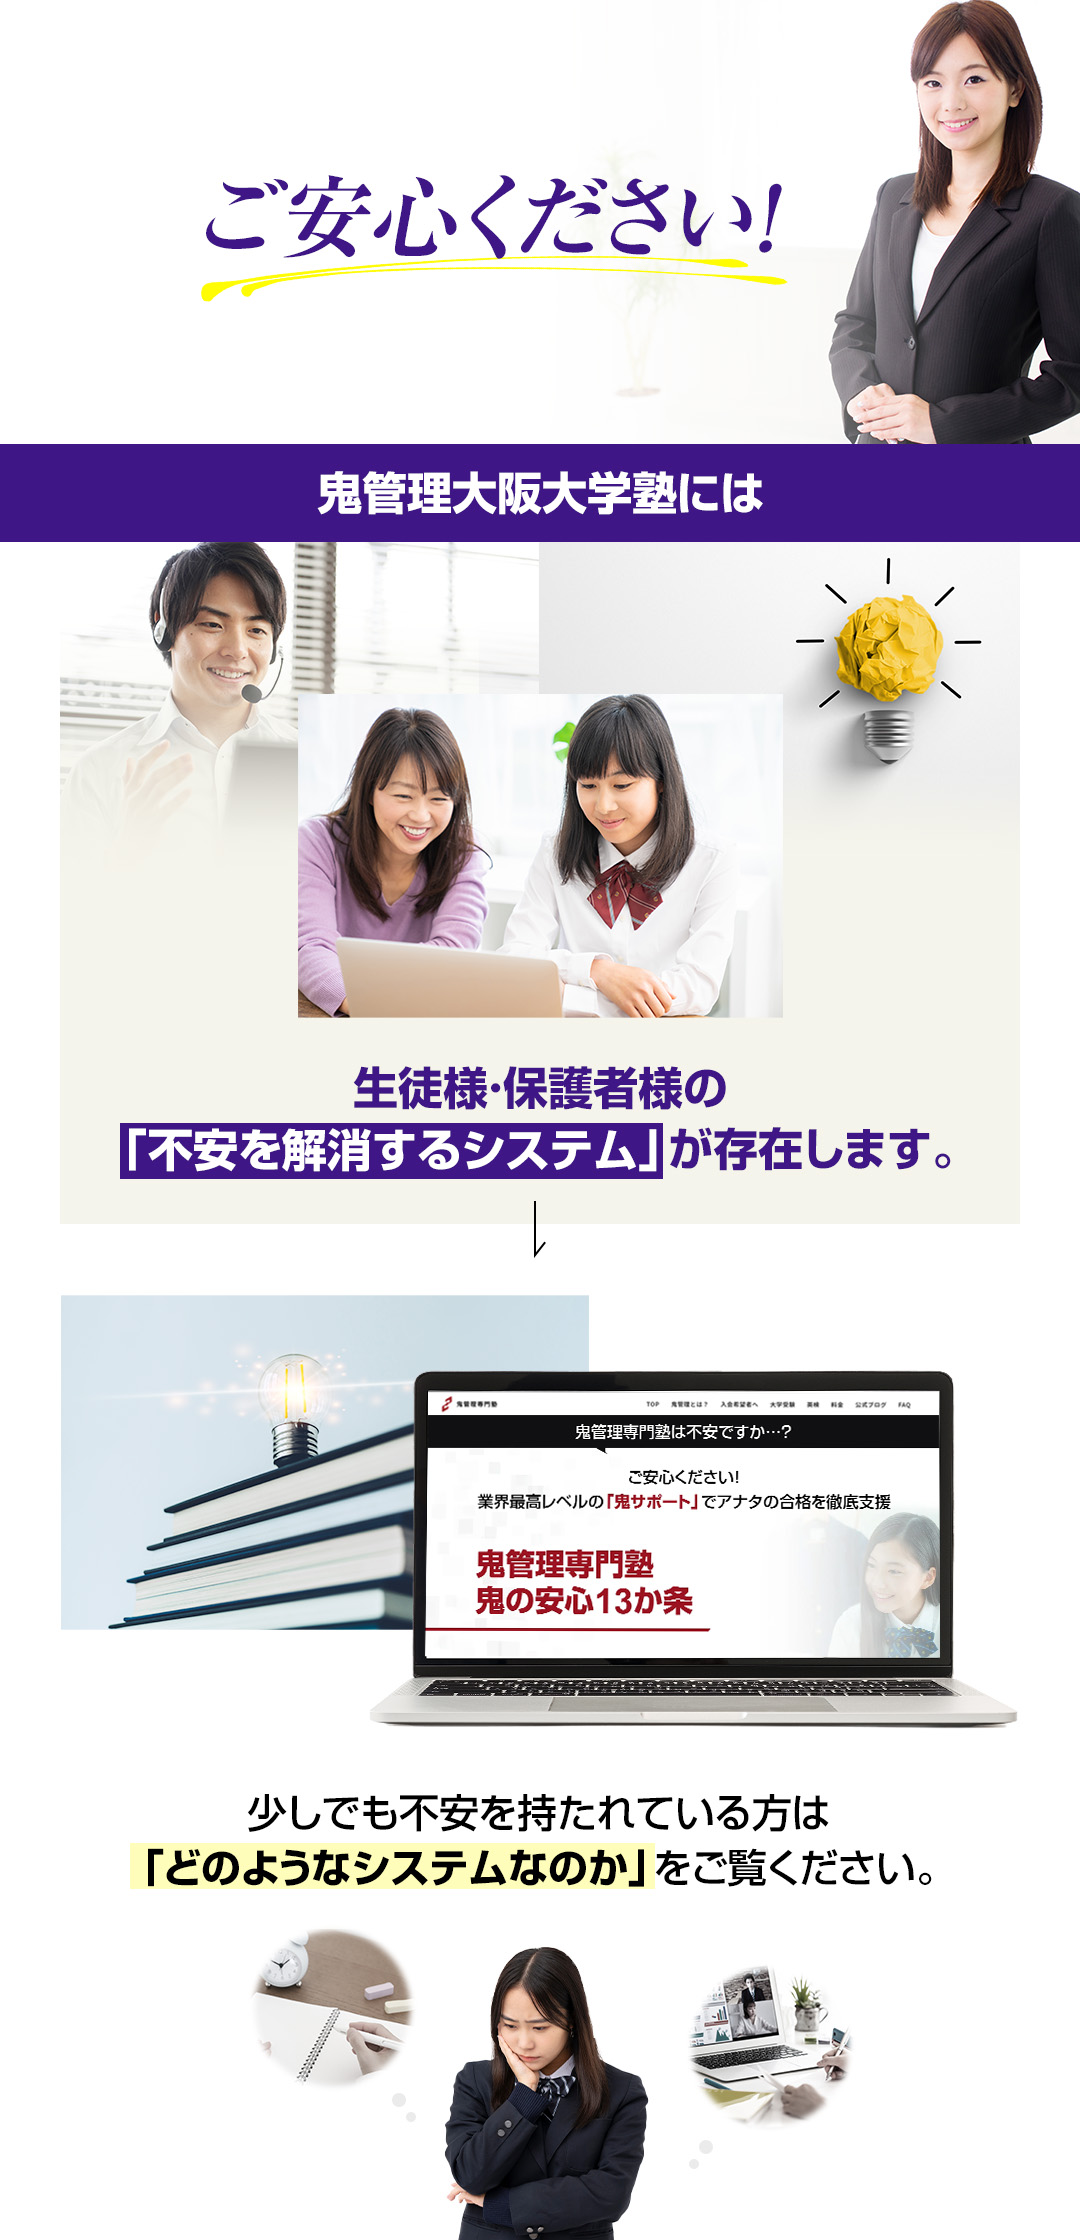 鬼管理大阪大学塾には生徒様・保護者様の「不安を解消するシステム」が存在します